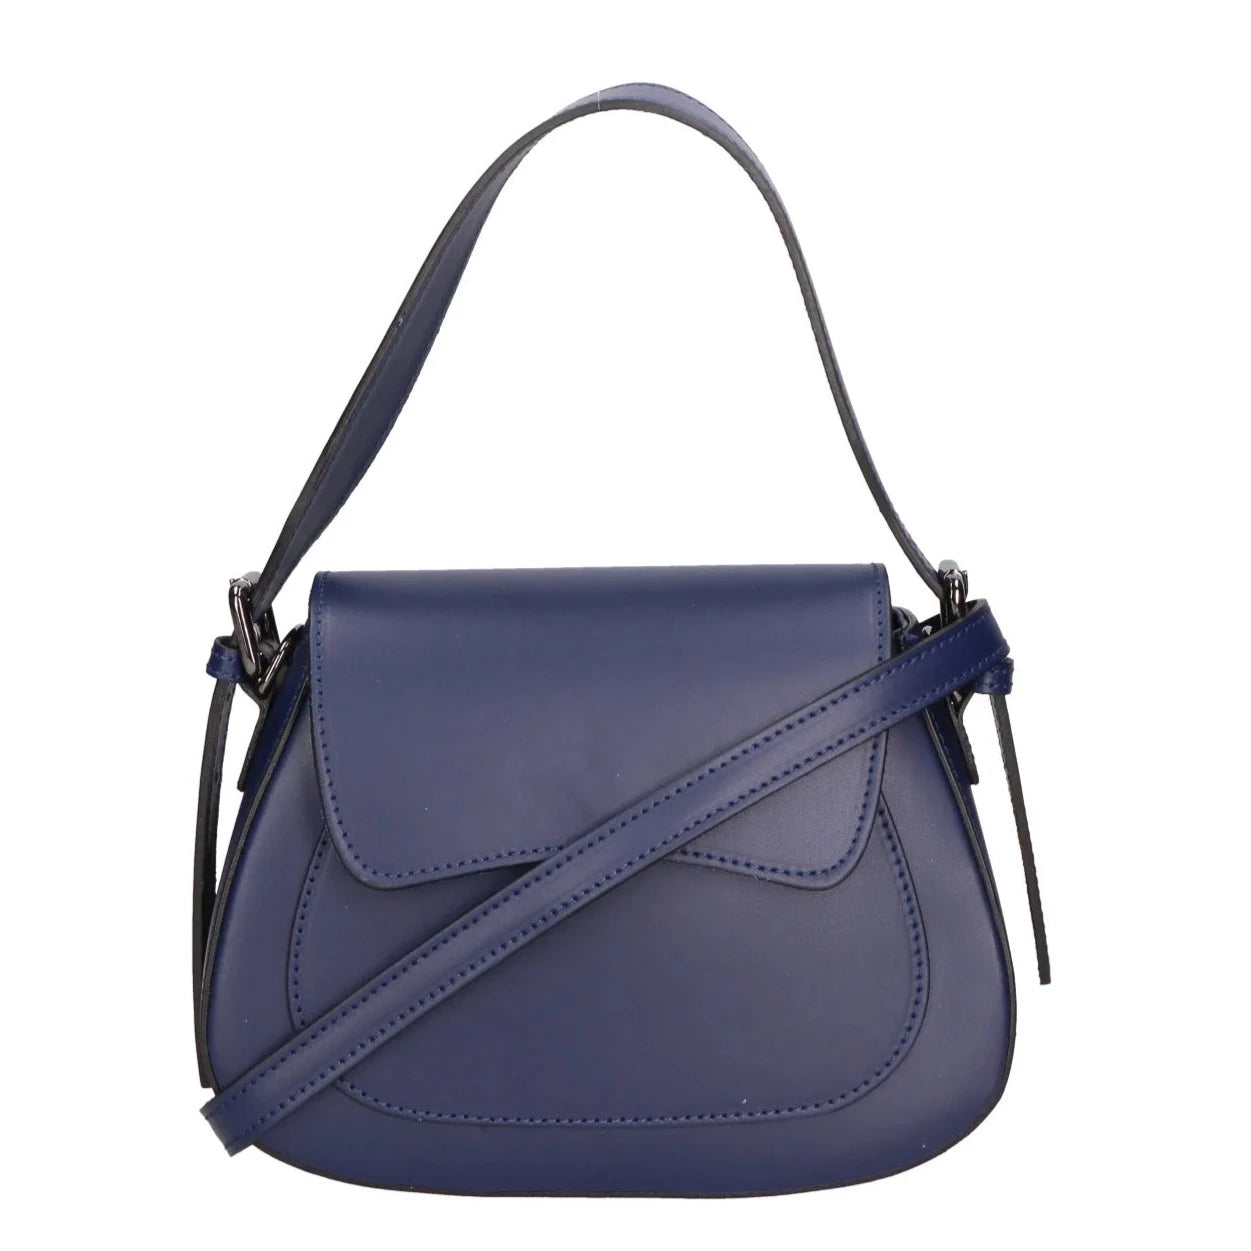 Leather bag with 2 shoulder straps "Milan", Dark blue